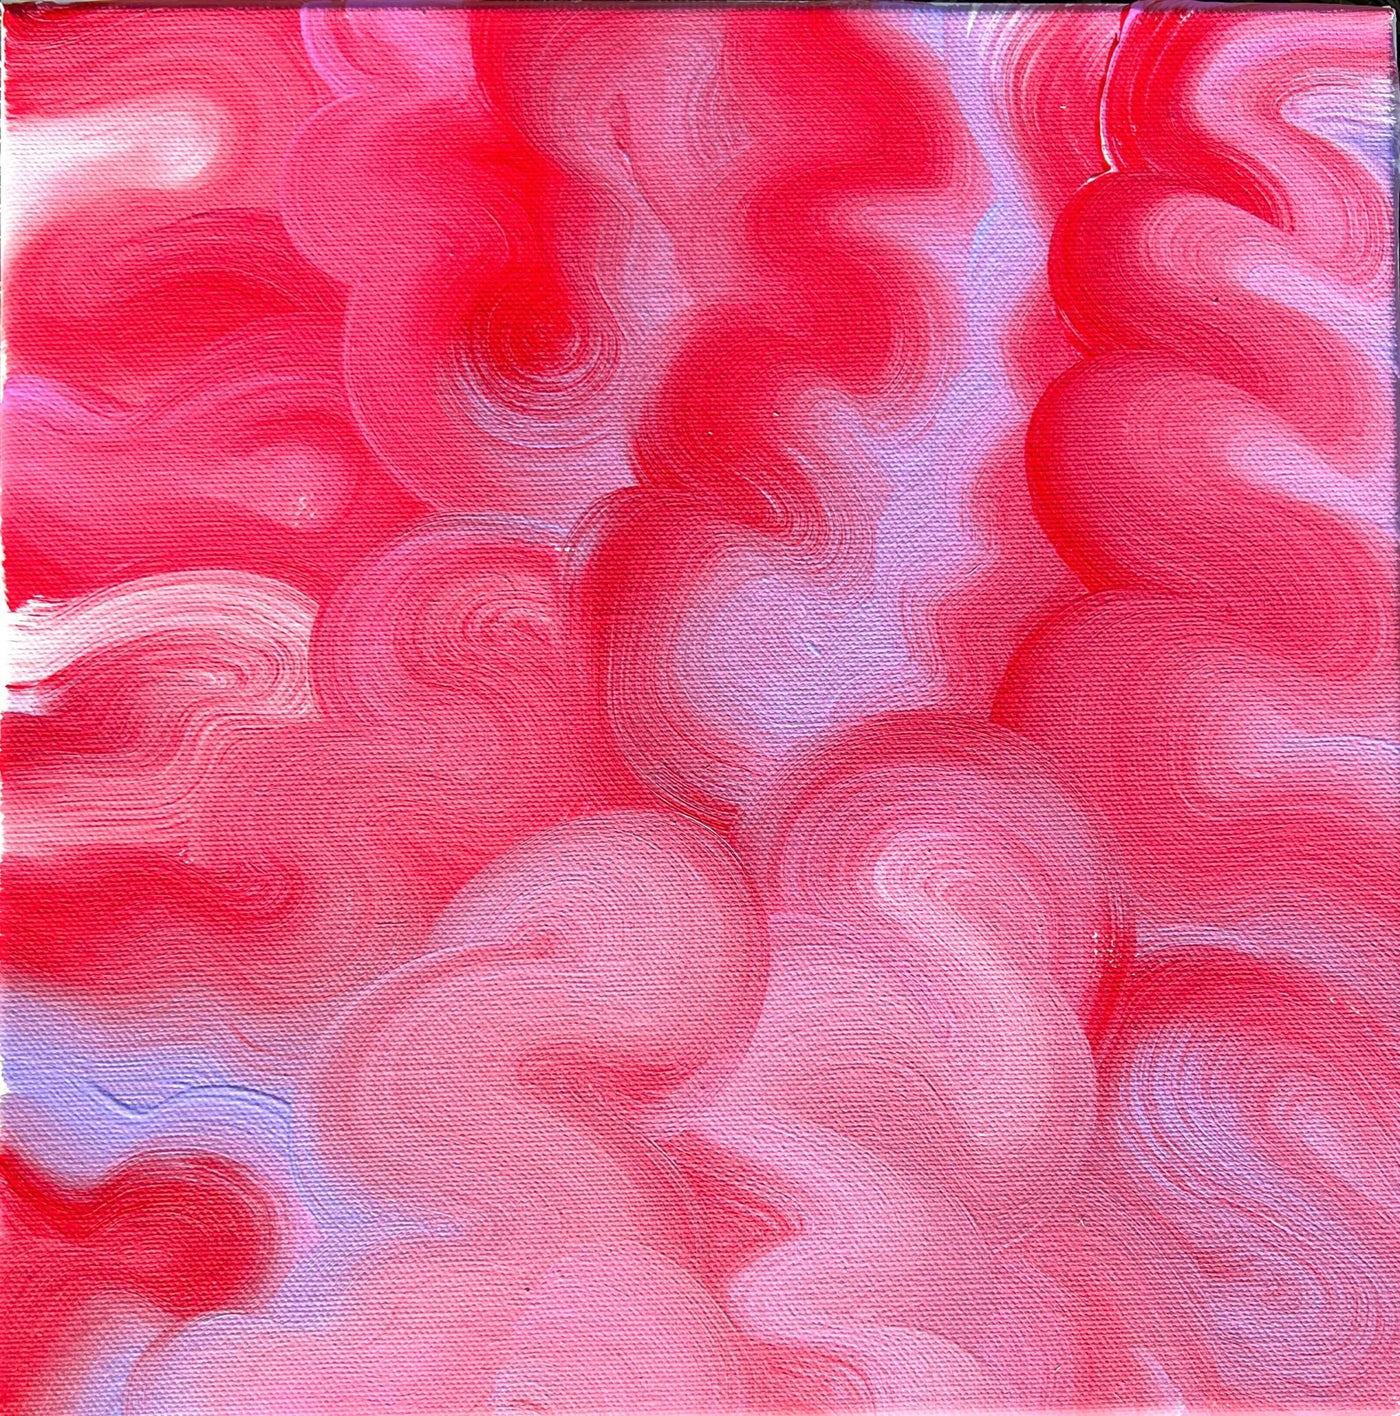 Pink Red Swirls,,Mulganai,